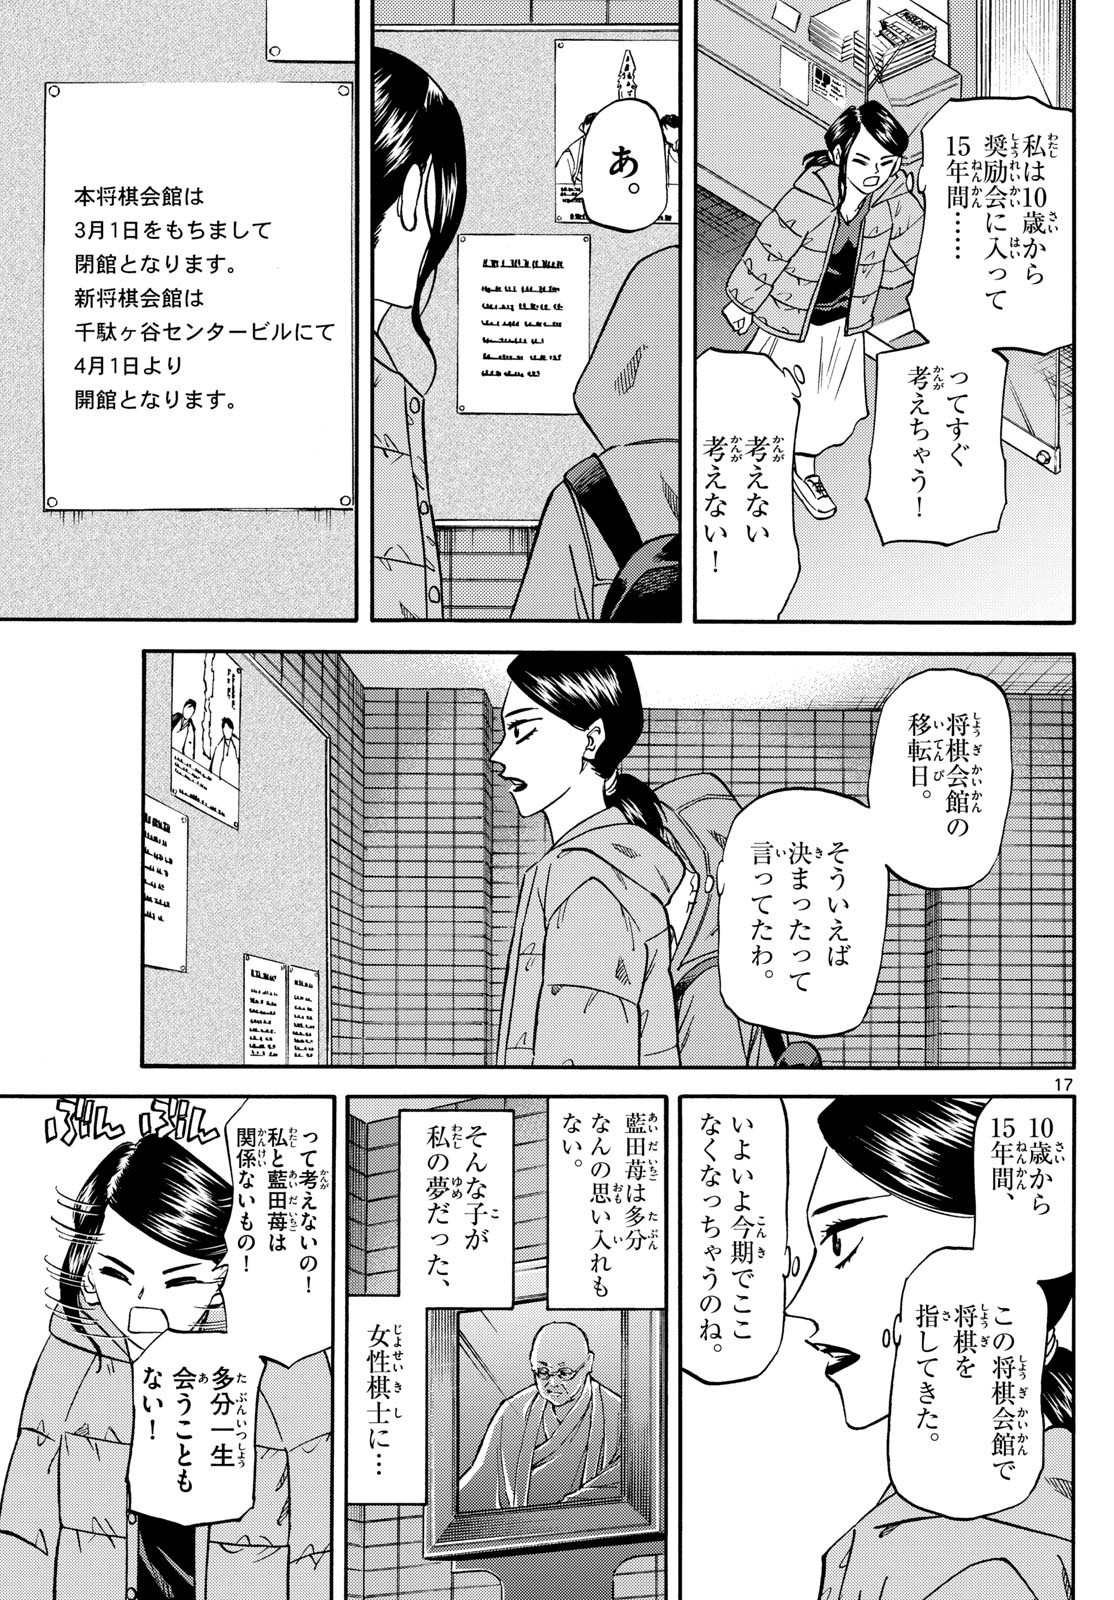 Ryu-to-Ichigo - Chapter 172 - Page 17